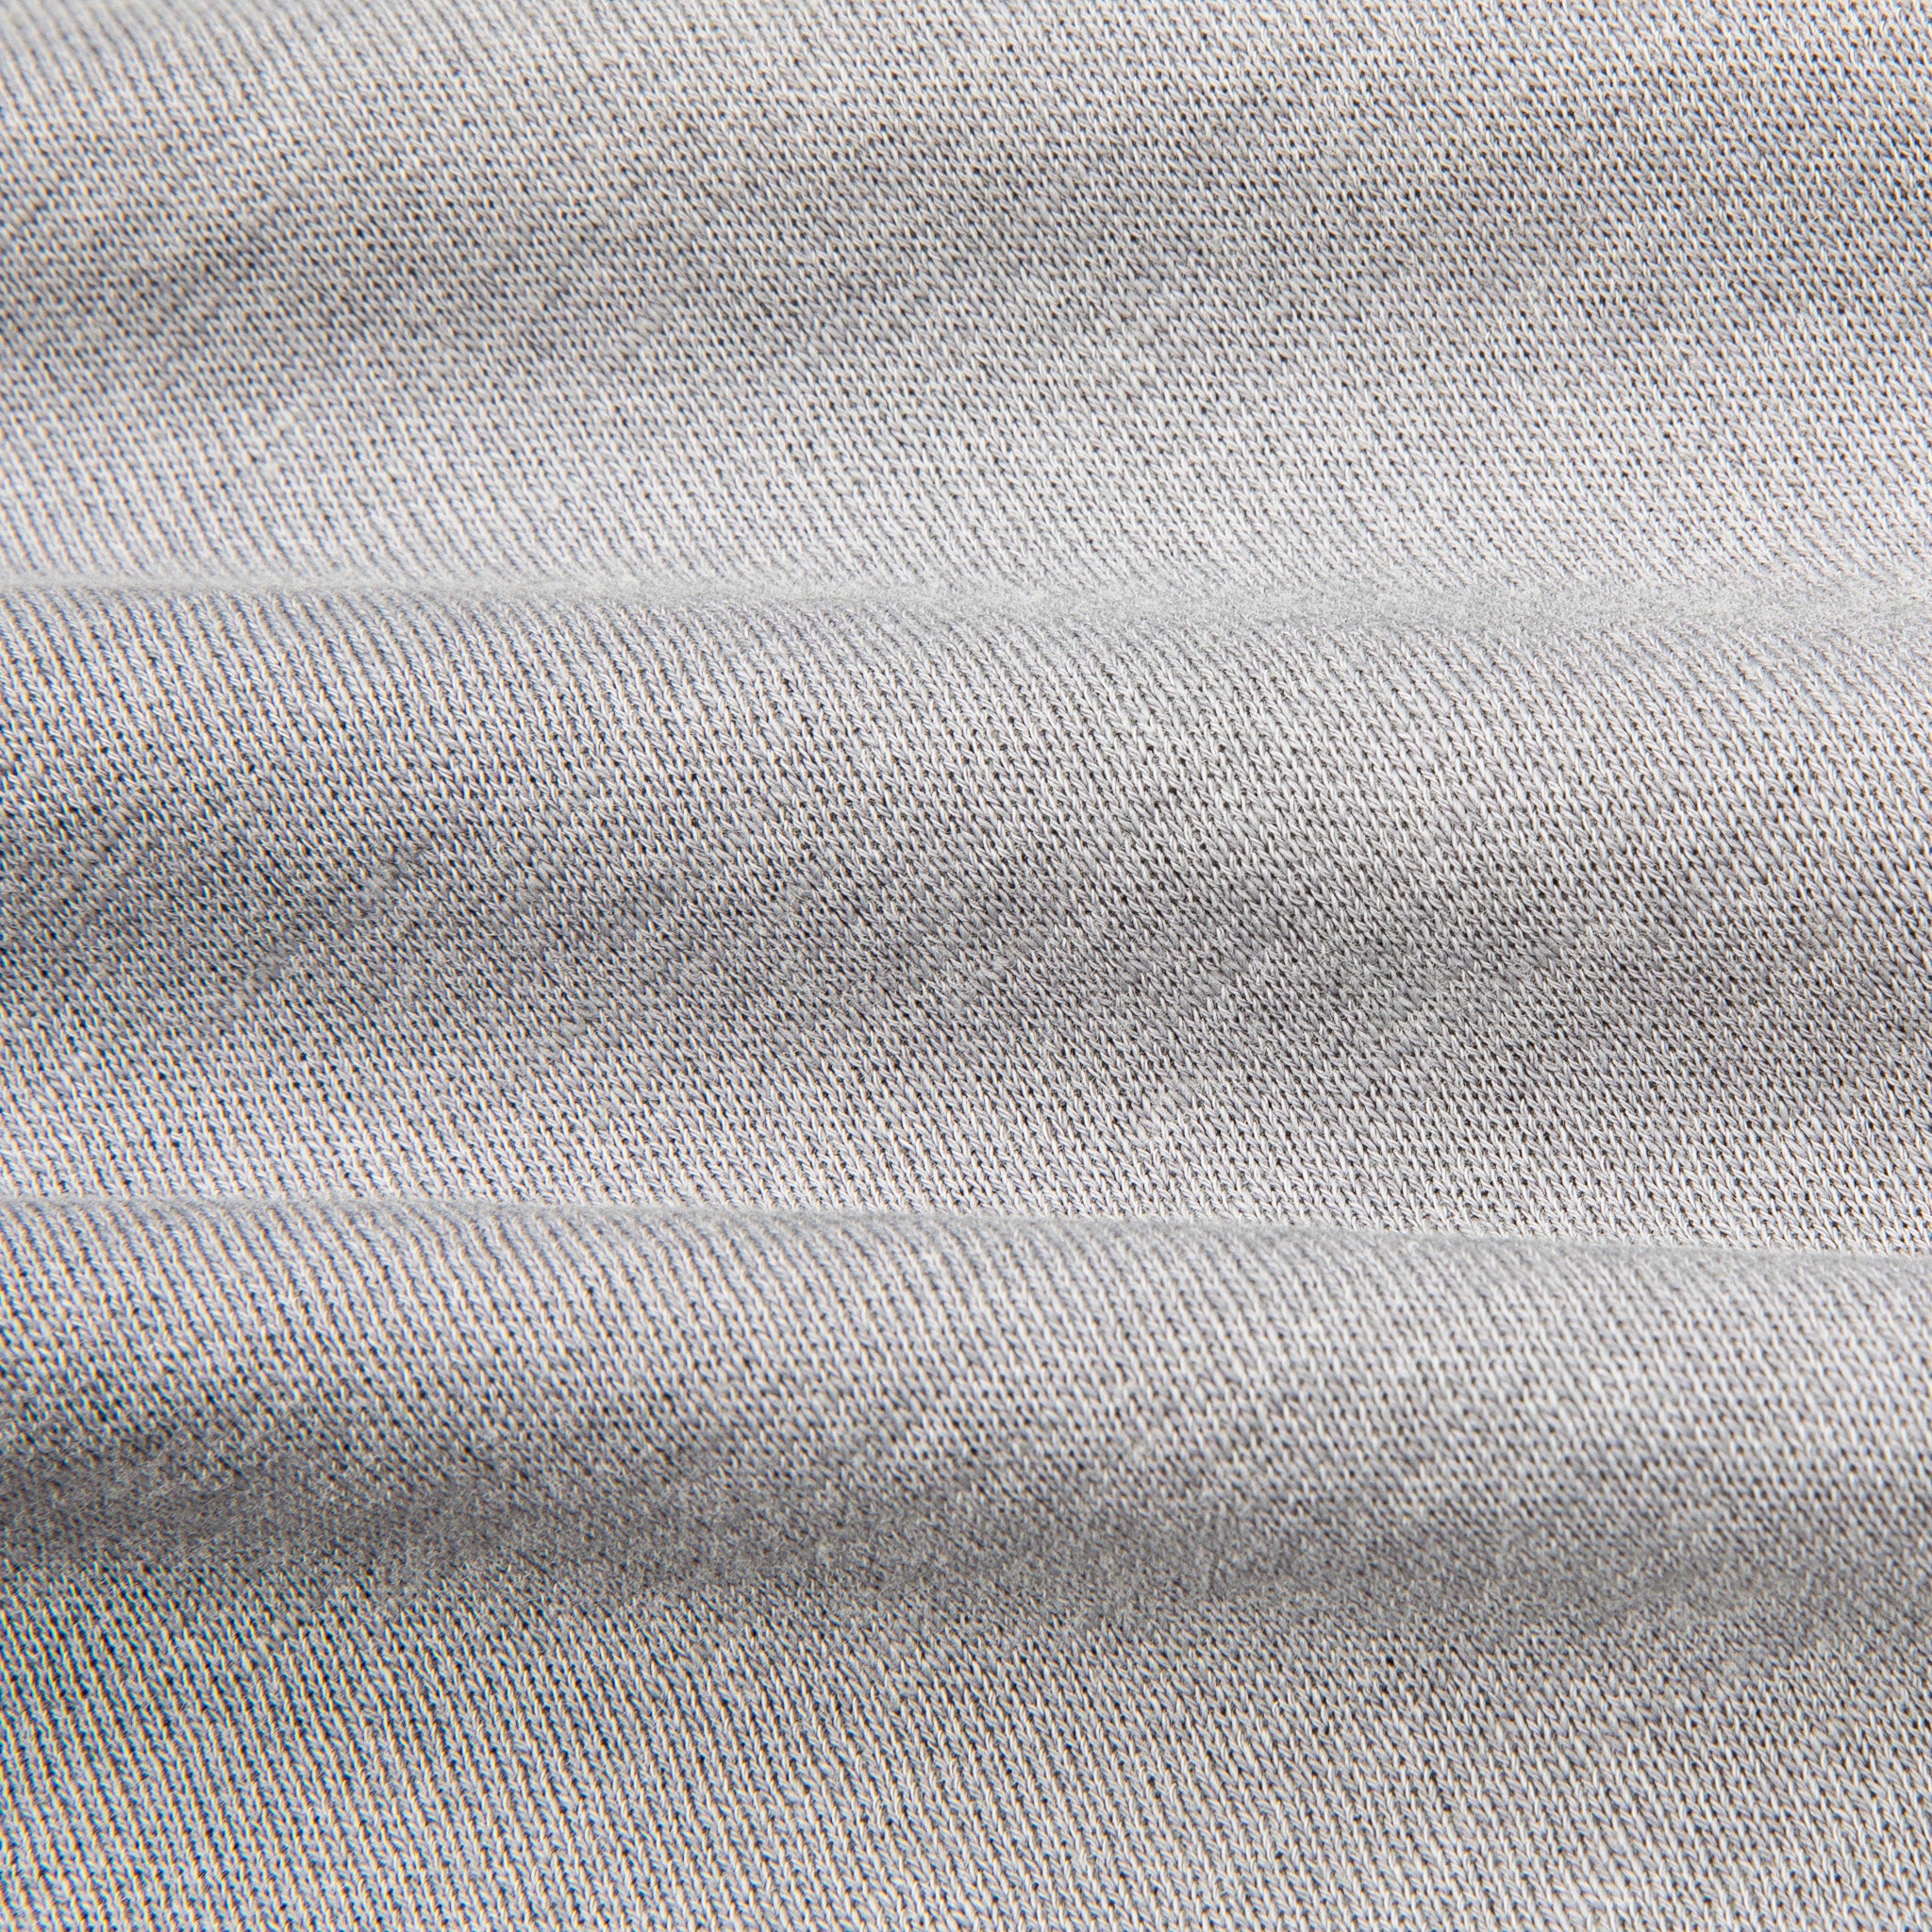 James Perse Vintage Fleece Raglan Sweat Silver Grey